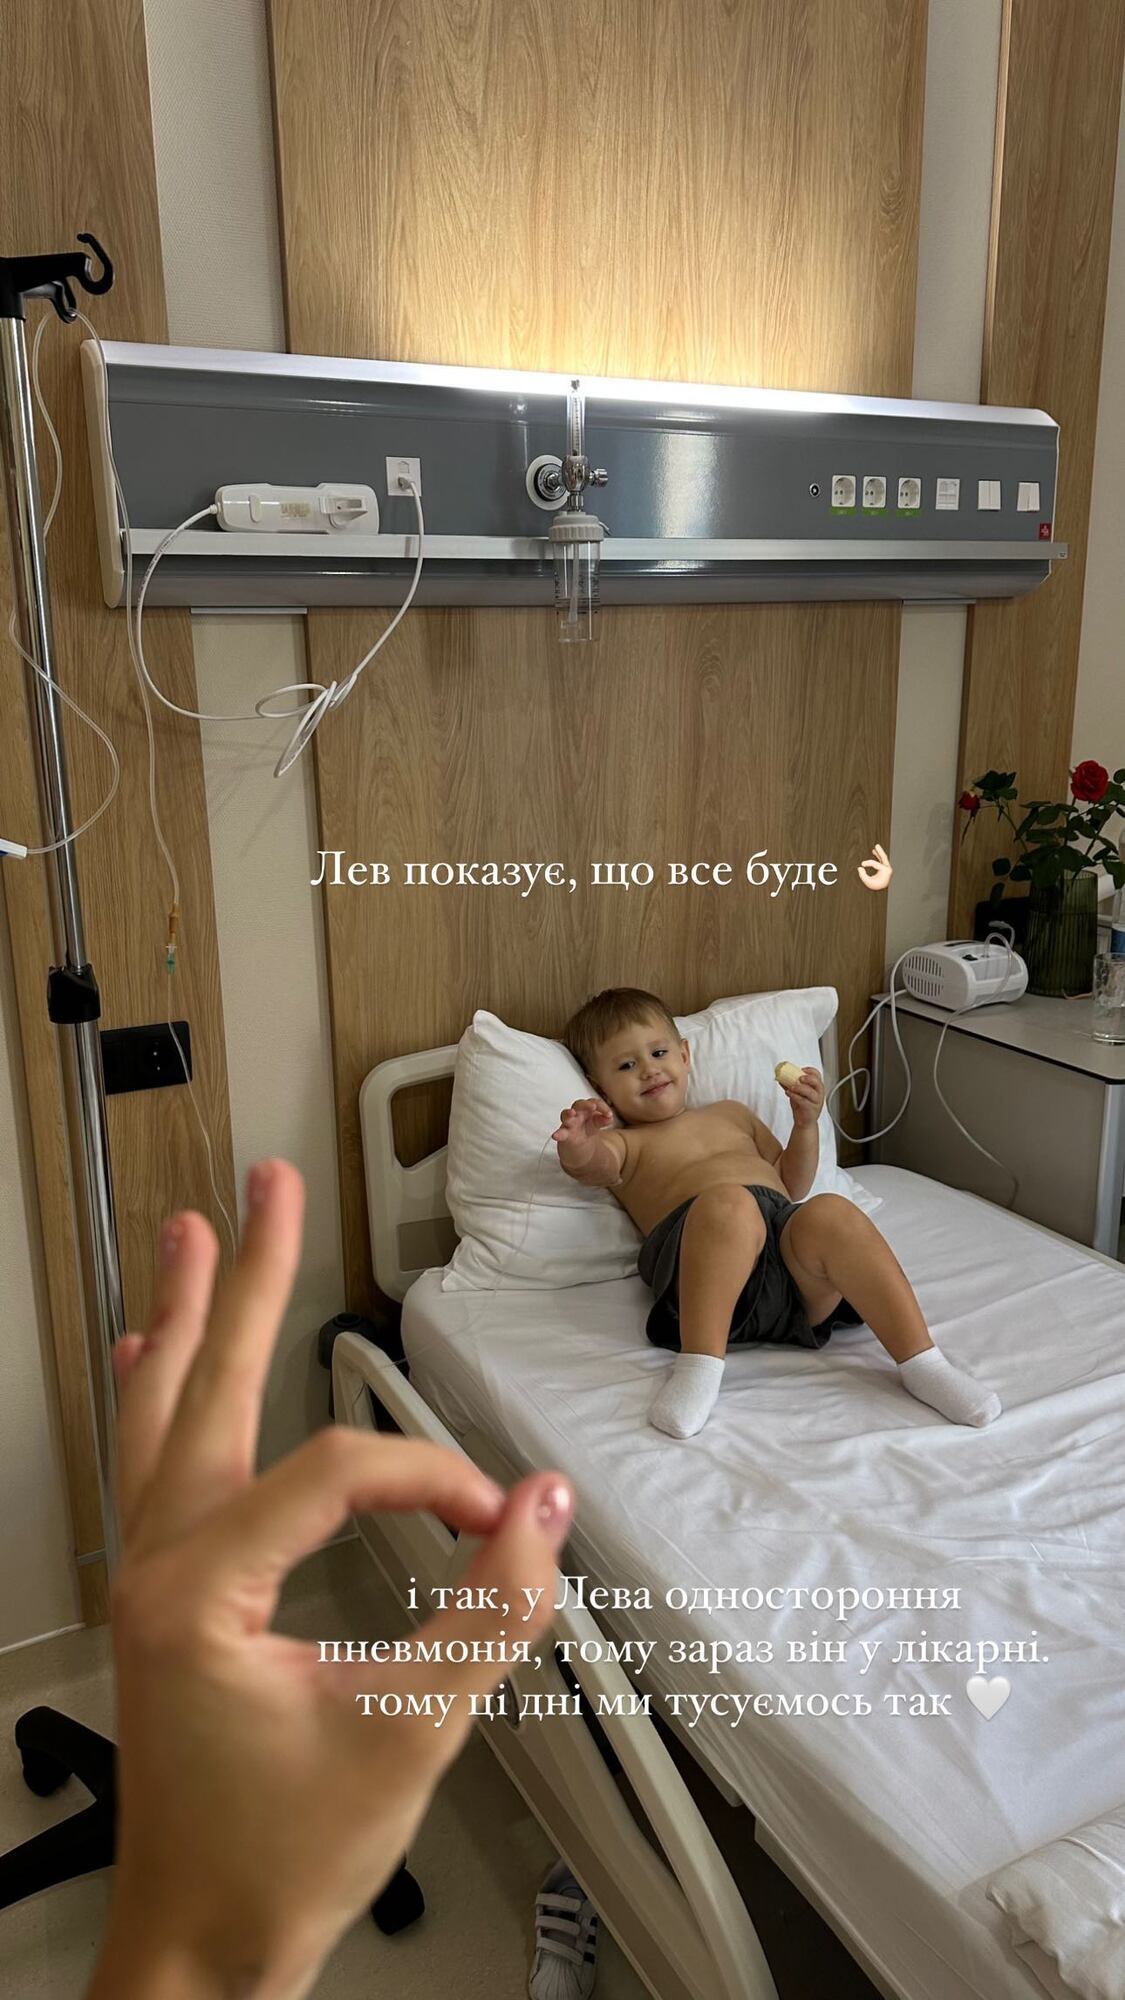 "У сльозах сповзла по стіні": Квіткова розкрила хворобу сина і показала фото з лікарні